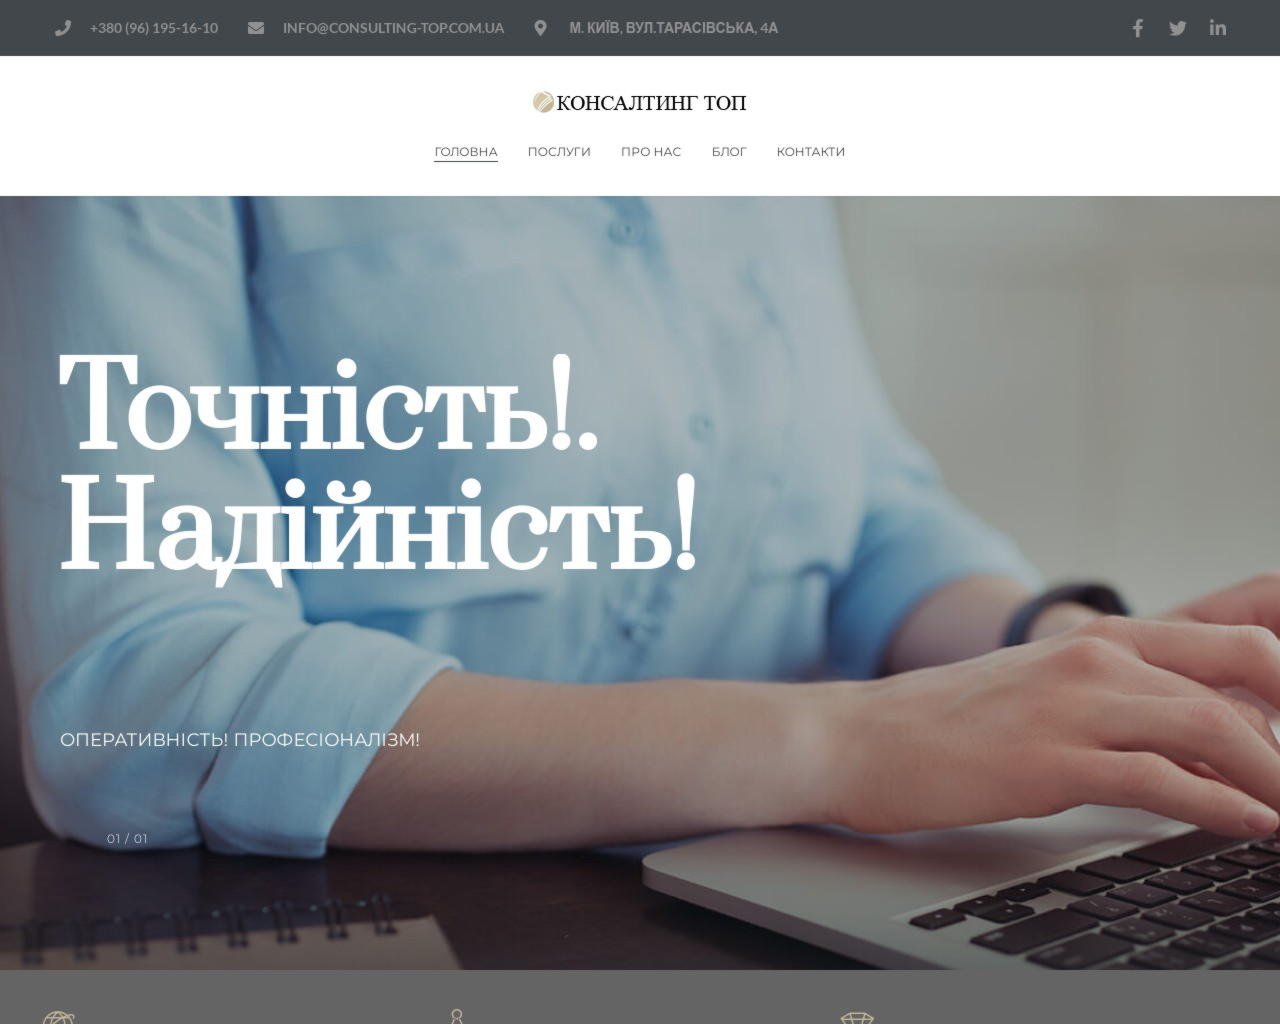 Компания Consulting-Top - бухгалтерские услуги по всей Украине.